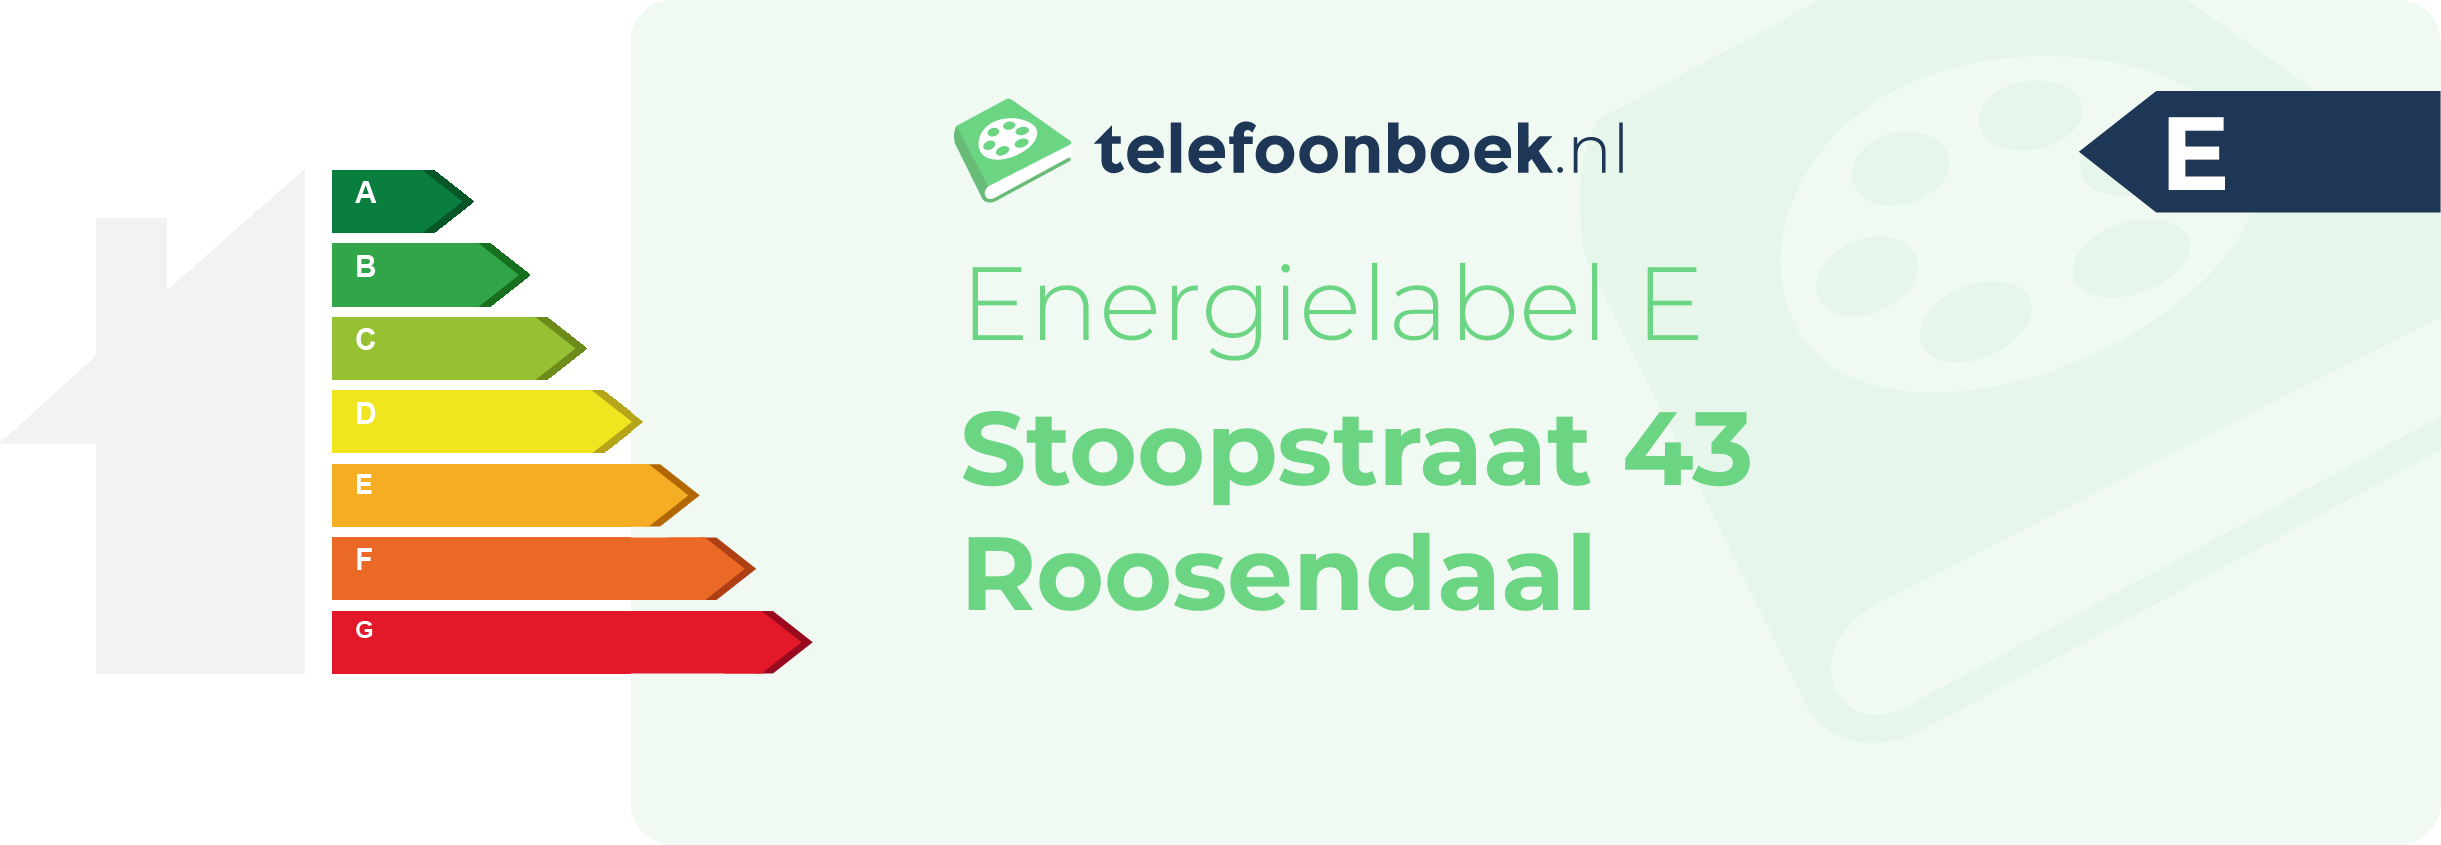 Energielabel Stoopstraat 43 Roosendaal